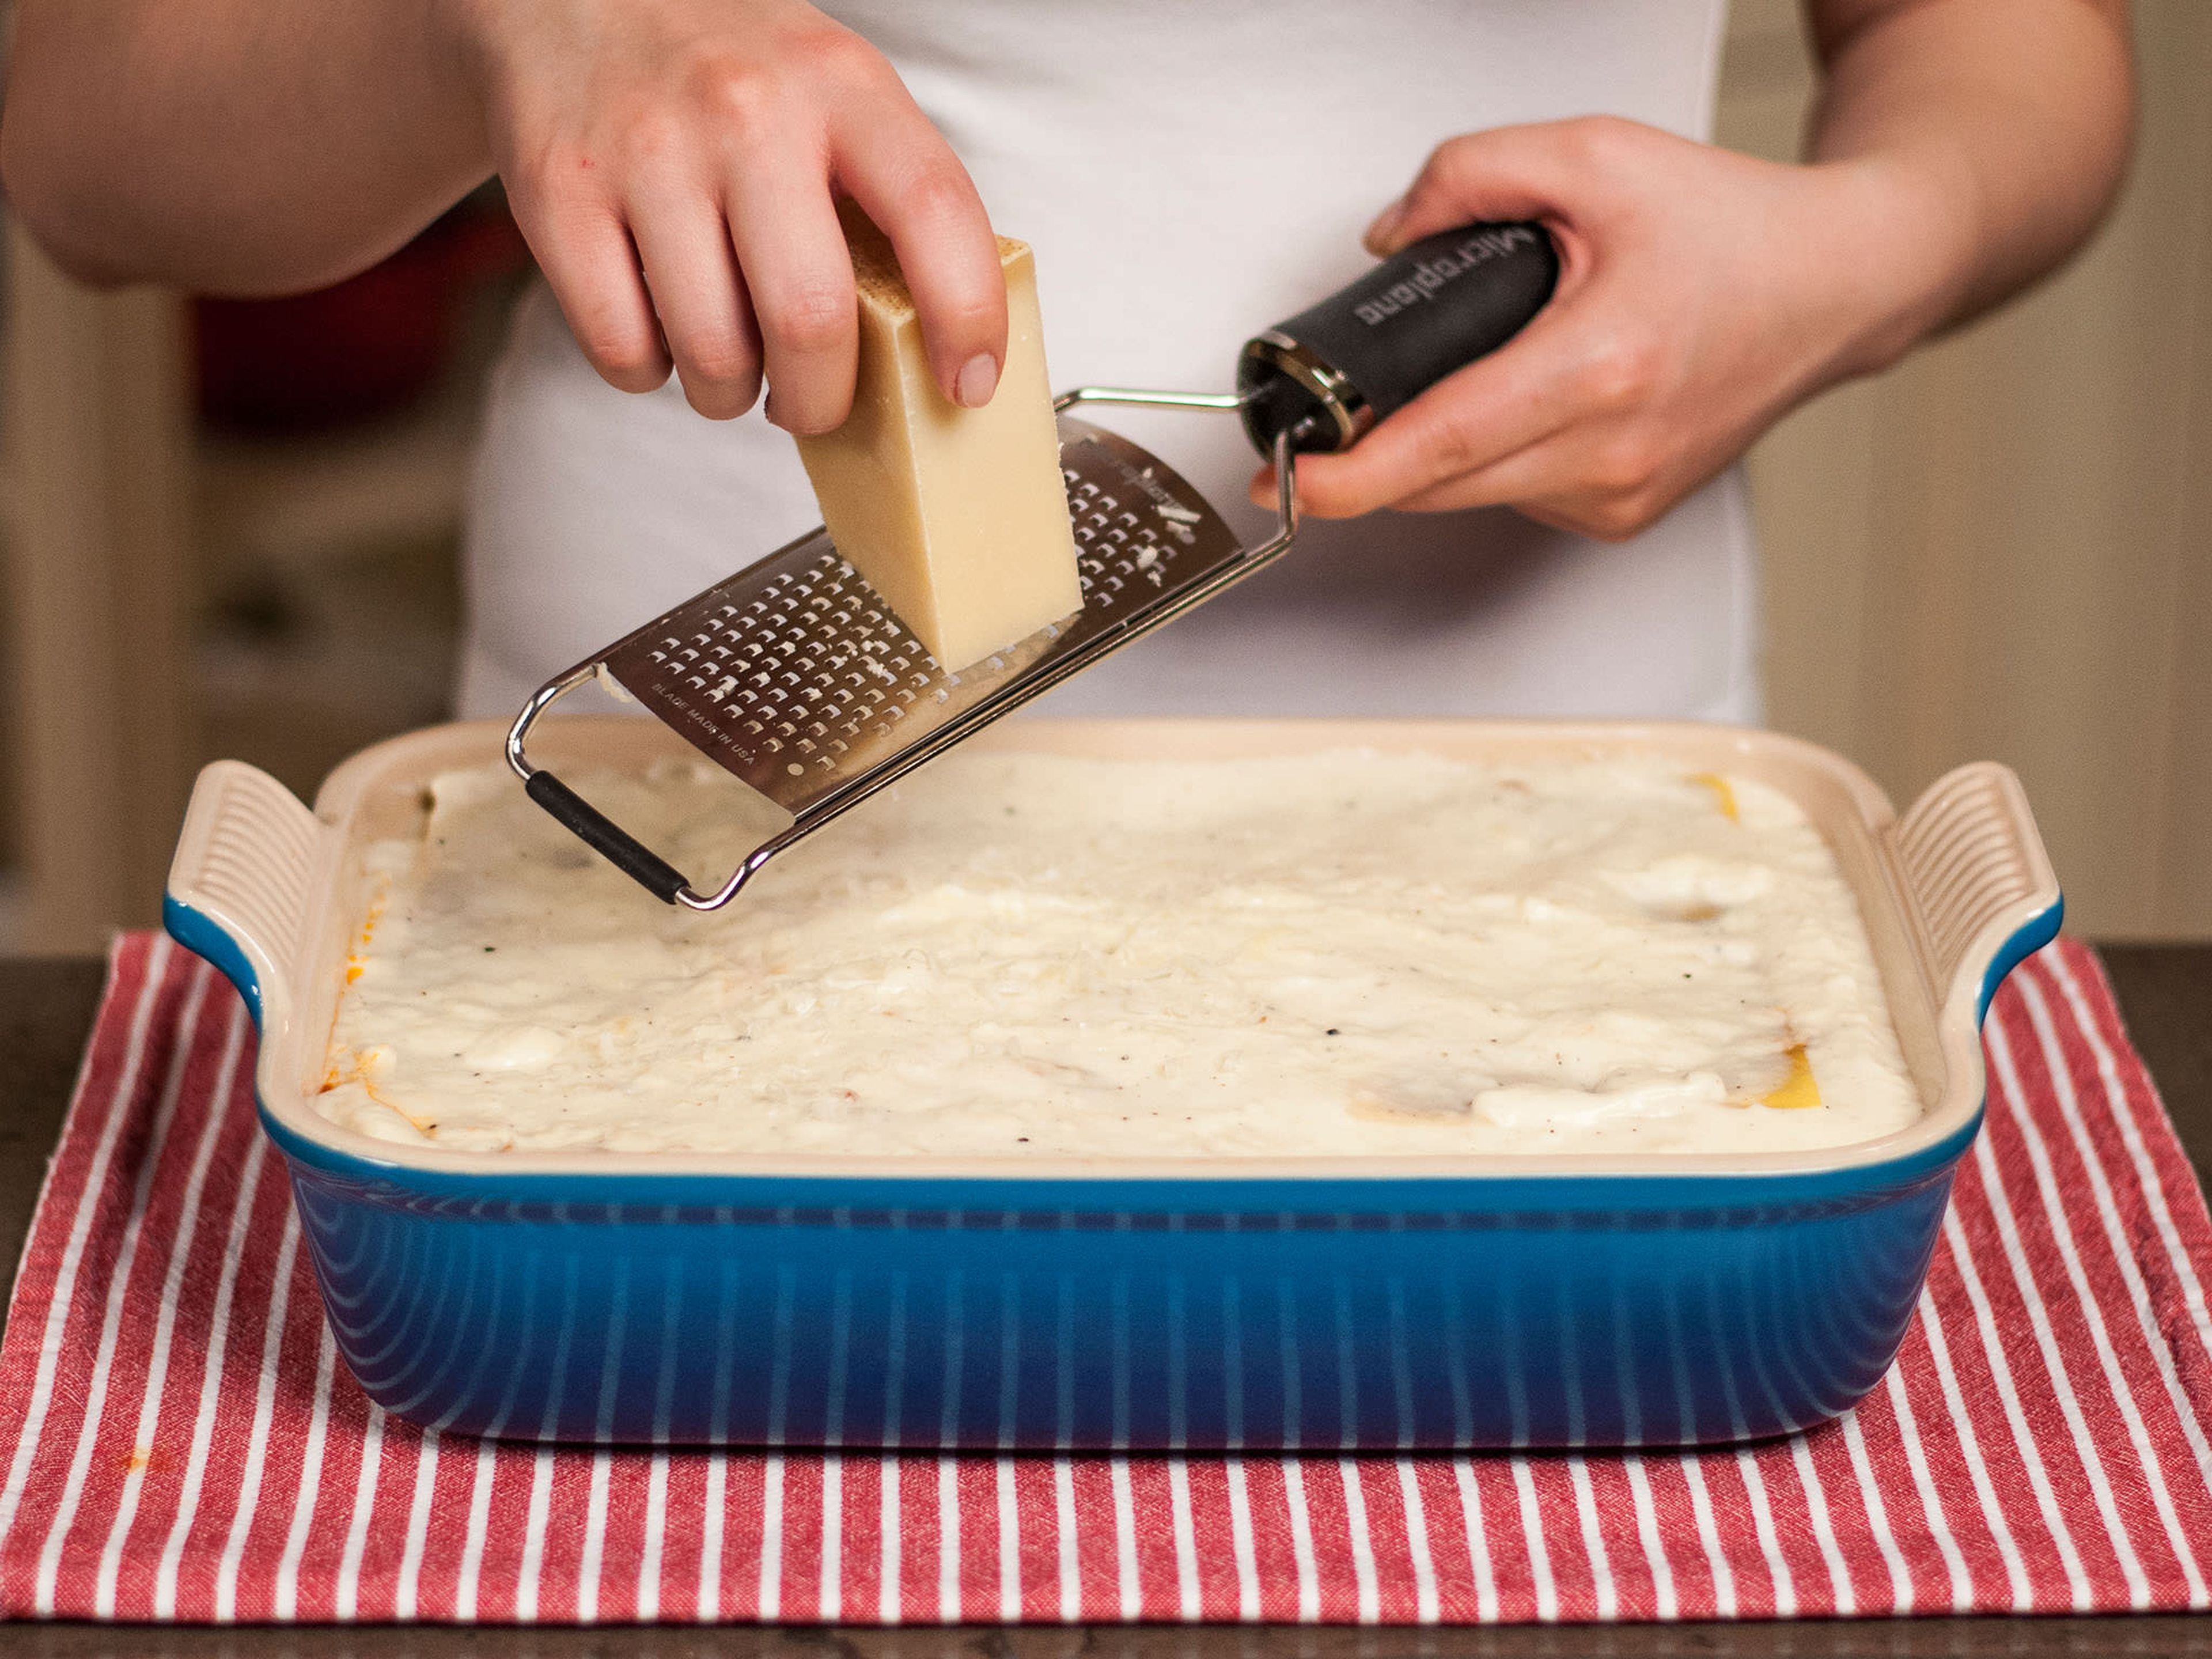 Den Parmesan über die letzte Schicht reiben und in einem vorgeheizten Ofen bei 200°C/390°F auf der mittleren Schiene für etwa 30-40 Min. backen, oder bis die Oberseite golden ist. In der heißen Auflaufform servieren. Guten Appetit!